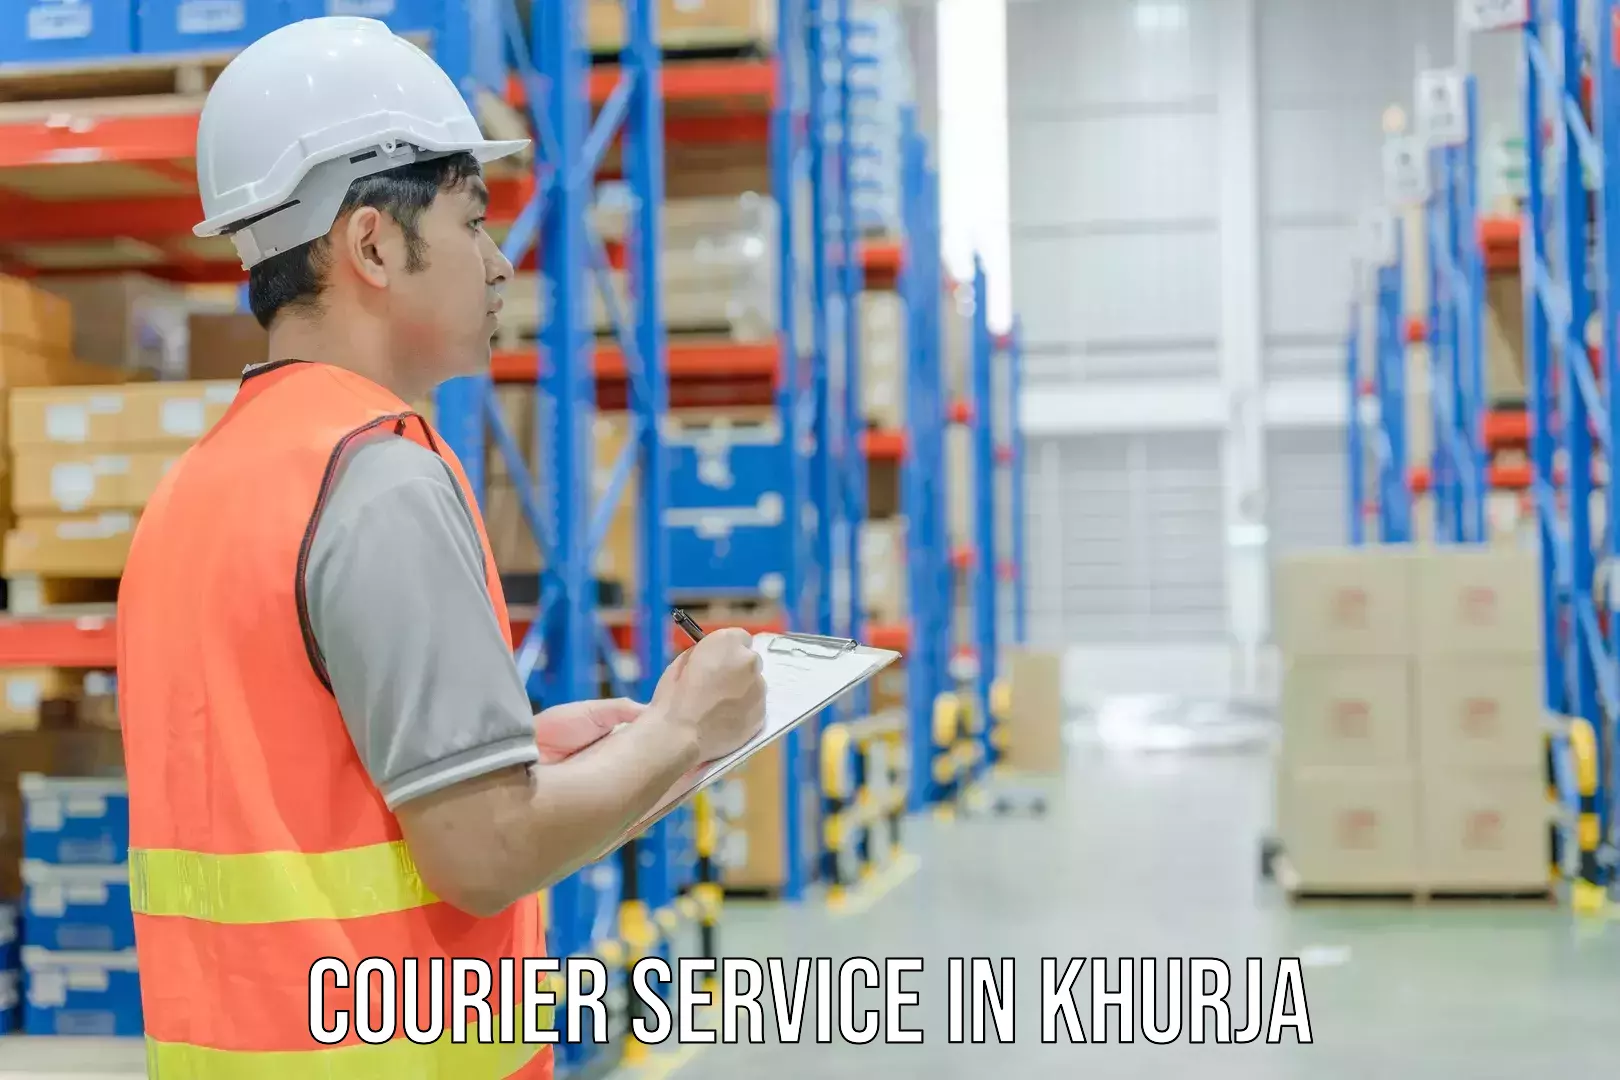 Modern courier technology in Khurja